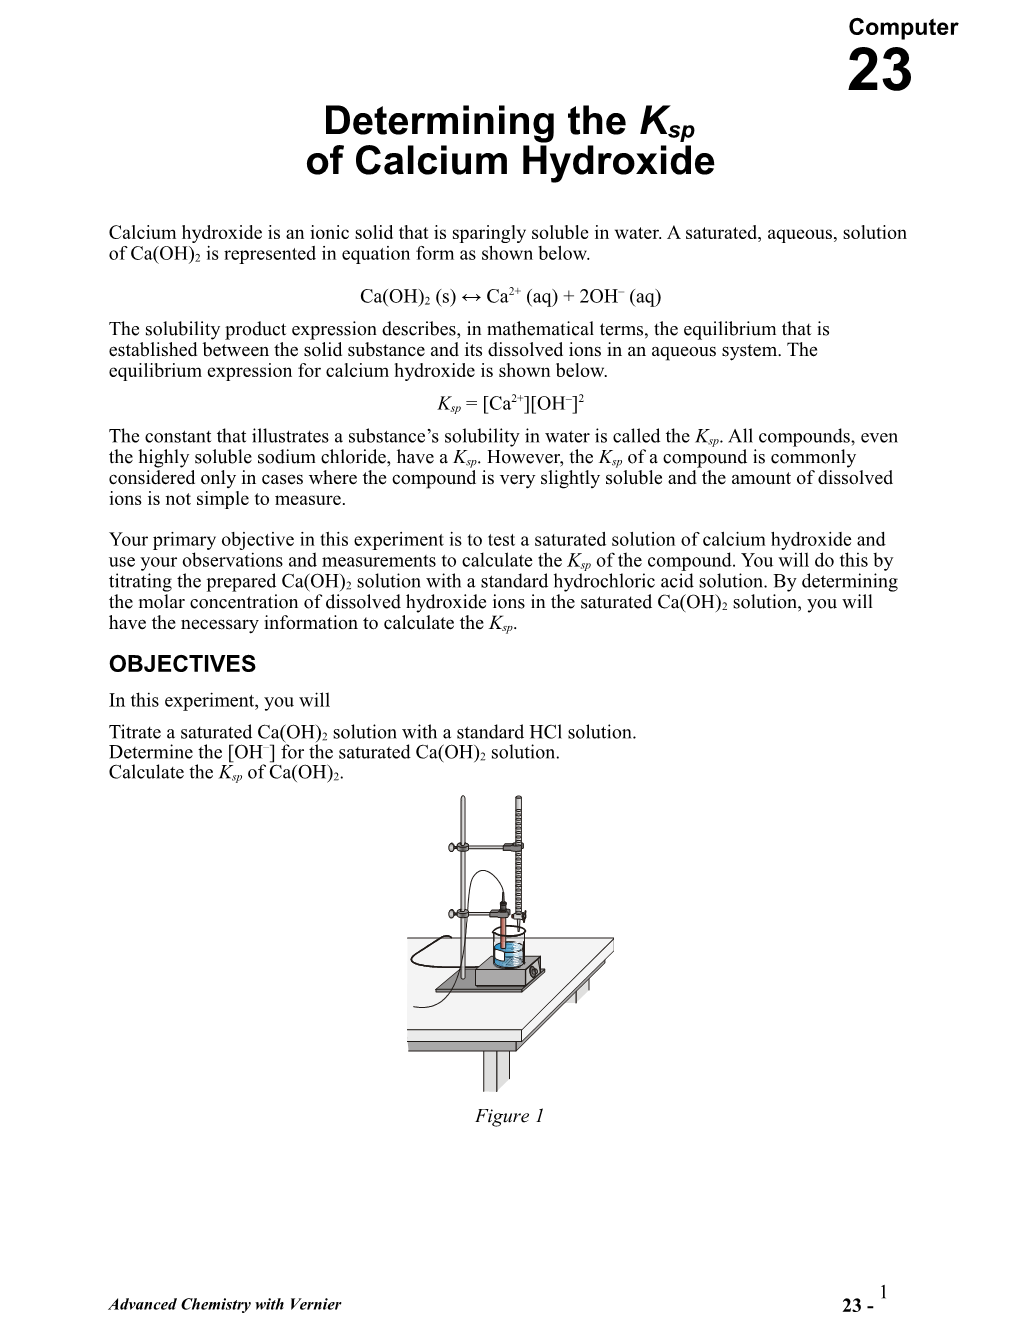 Determining the Ksp of Calcium Hydroxide